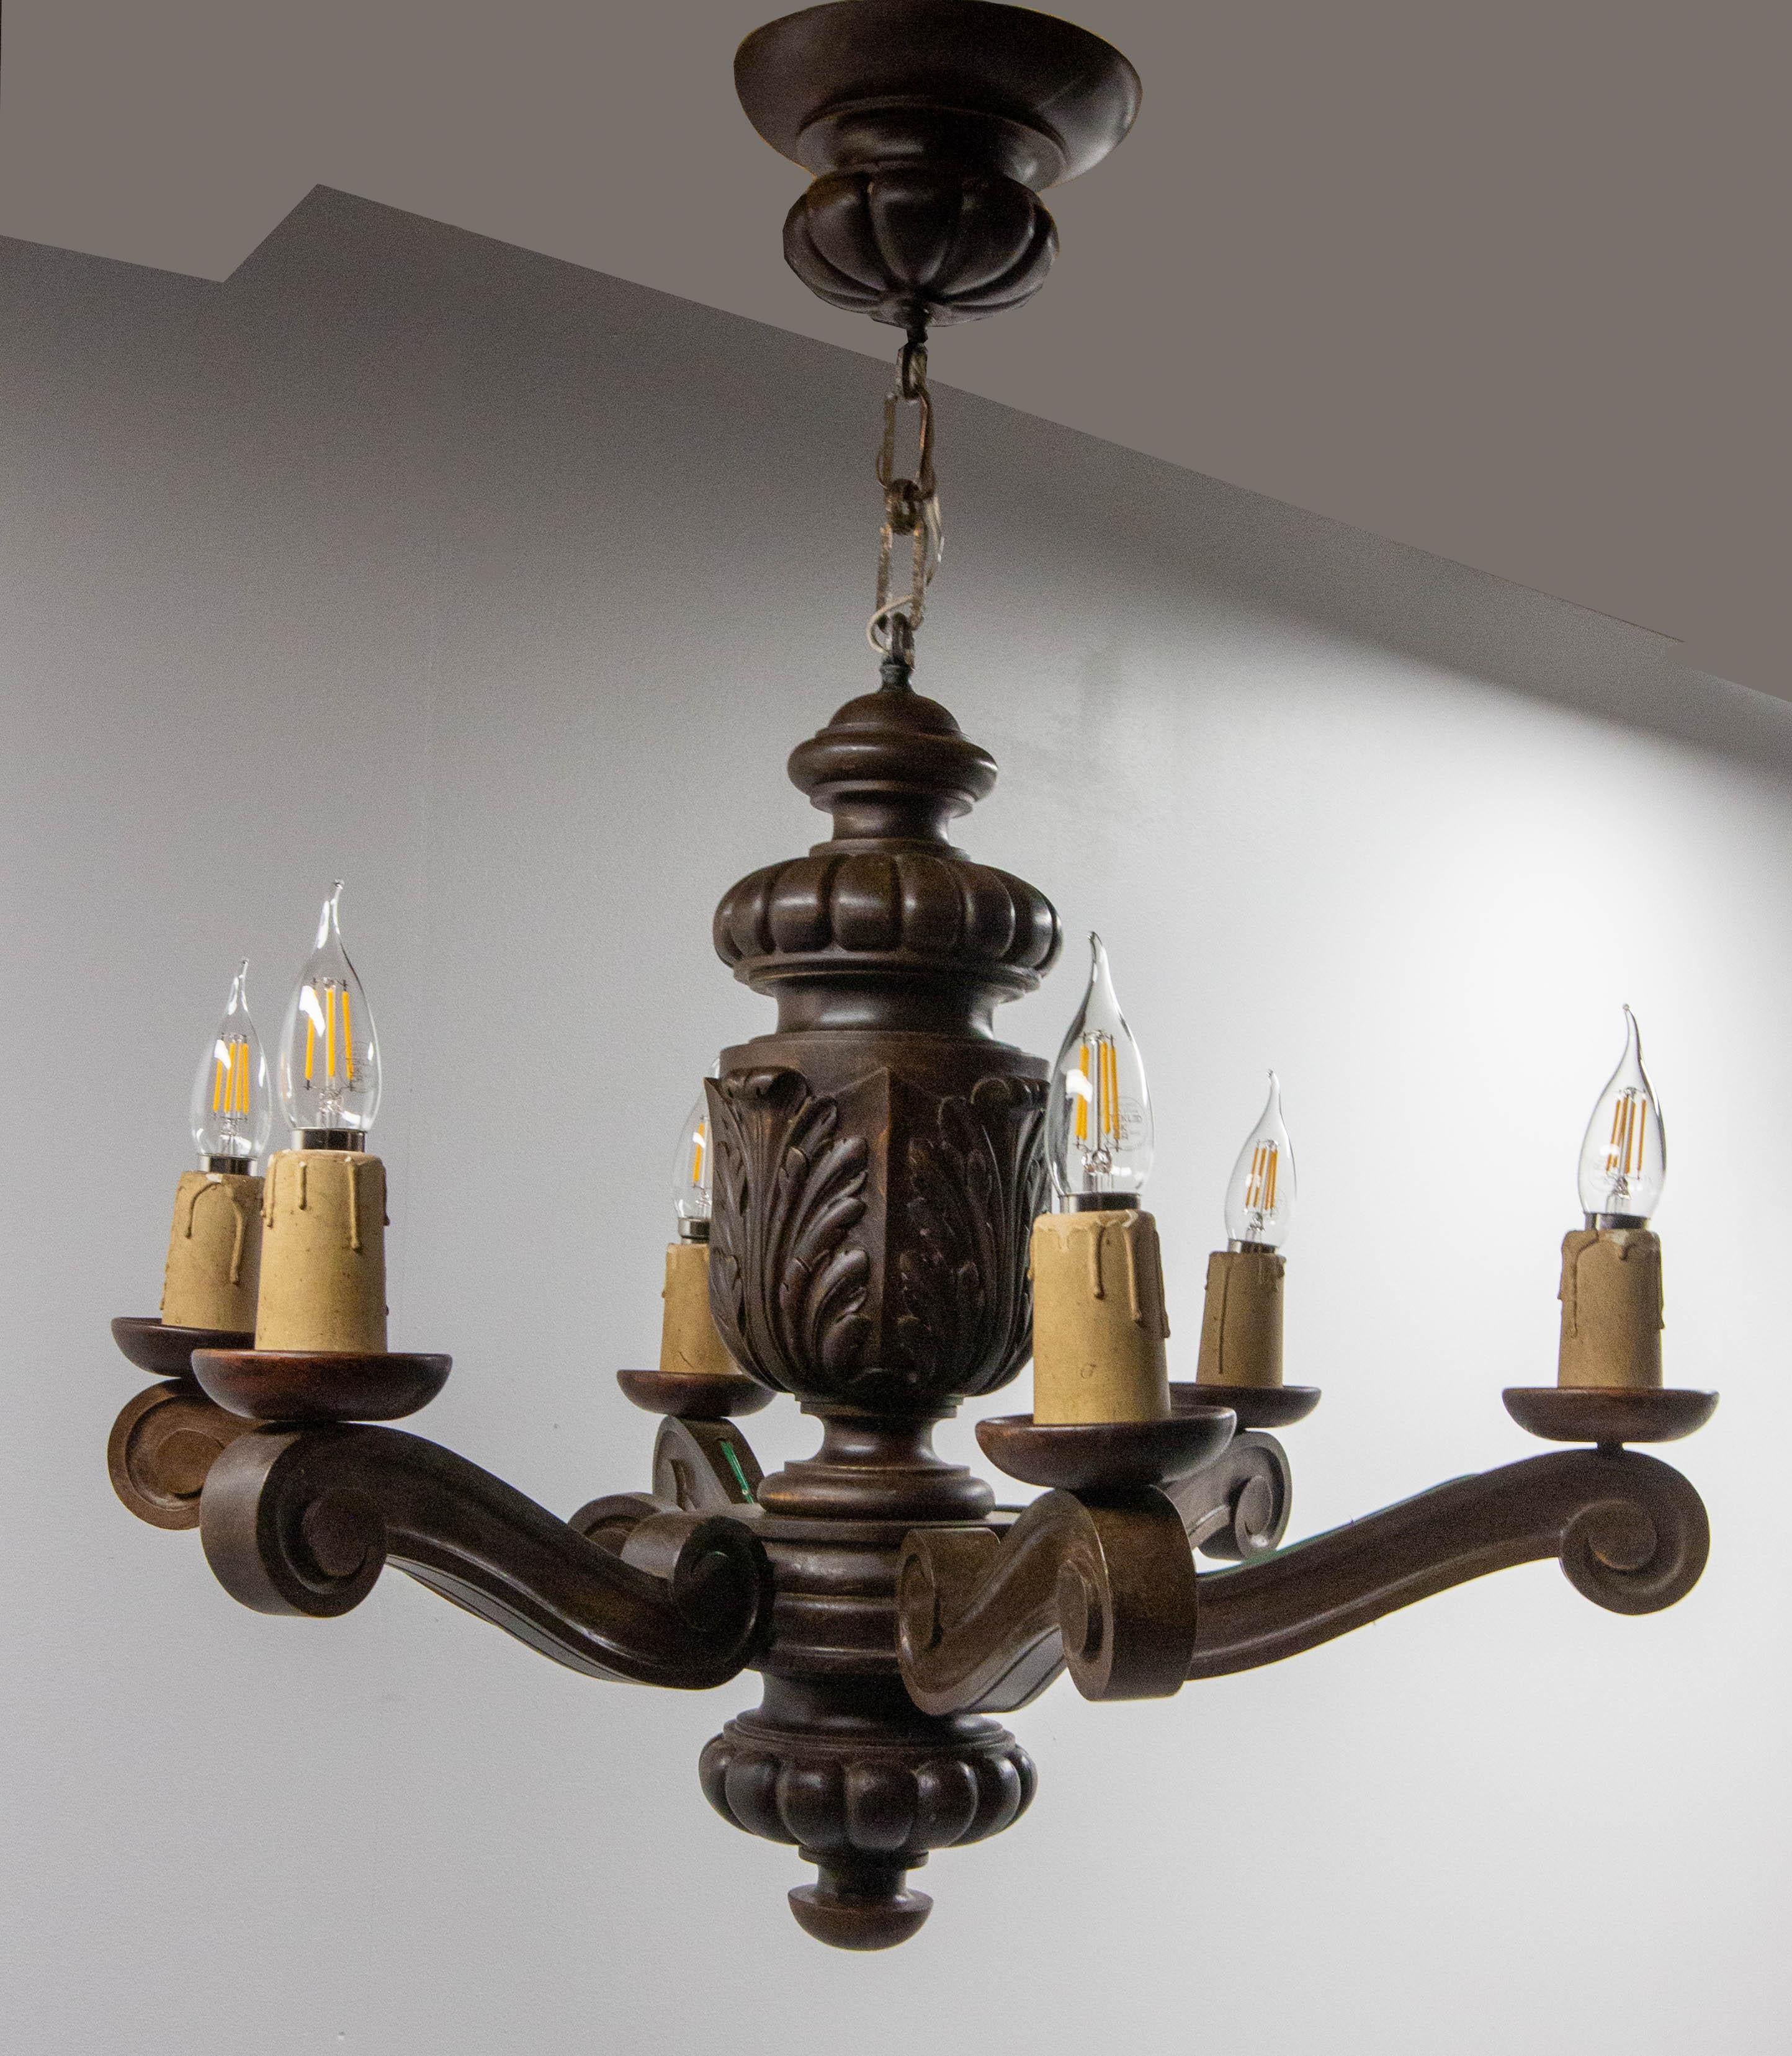 Spanischer Pendelleuchten-Kronleuchter, 20. Jahrhundert
Sechs Lampen auf einer Eichenholzhalterung, handgeschnitzt im Stil der spanischen Renaissance. 
Guter Zustand

Versand:
63 / 70 / 57 cm 4.5 kg.